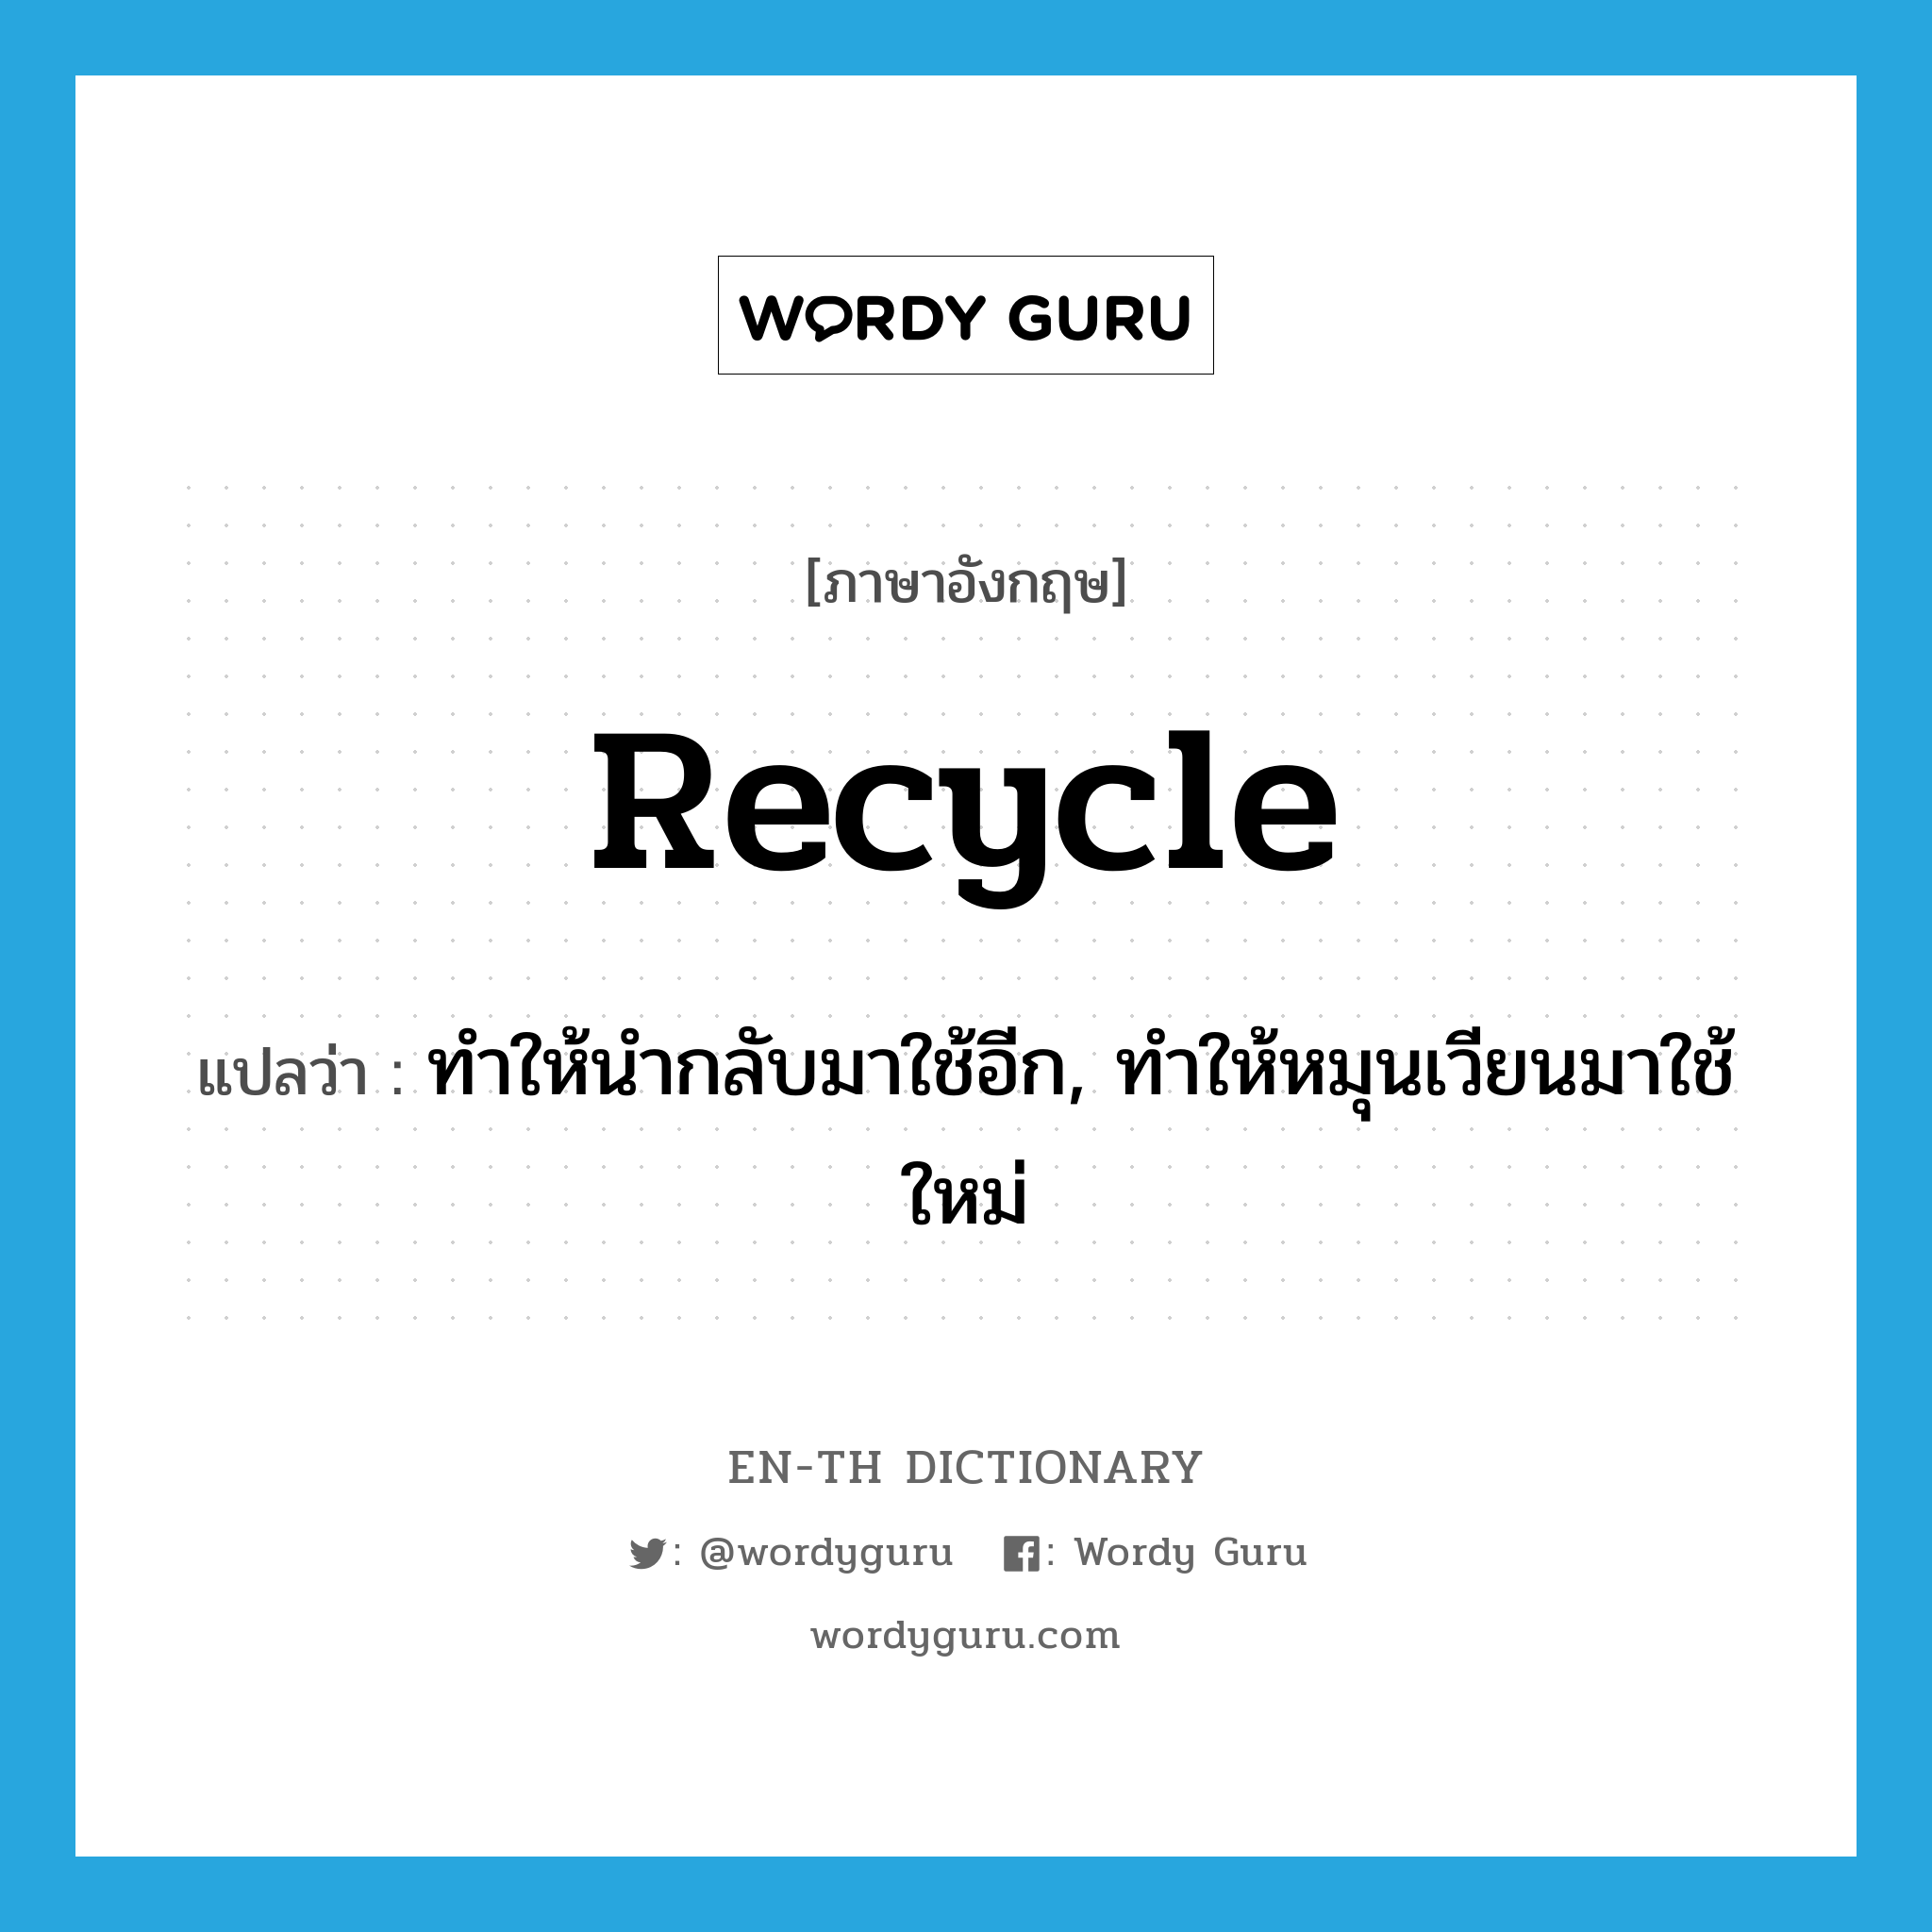 ทำให้นำกลับมาใช้อีก, ทำให้หมุนเวียนมาใช้ใหม่ ภาษาอังกฤษ?, คำศัพท์ภาษาอังกฤษ ทำให้นำกลับมาใช้อีก, ทำให้หมุนเวียนมาใช้ใหม่ แปลว่า recycle ประเภท VT หมวด VT